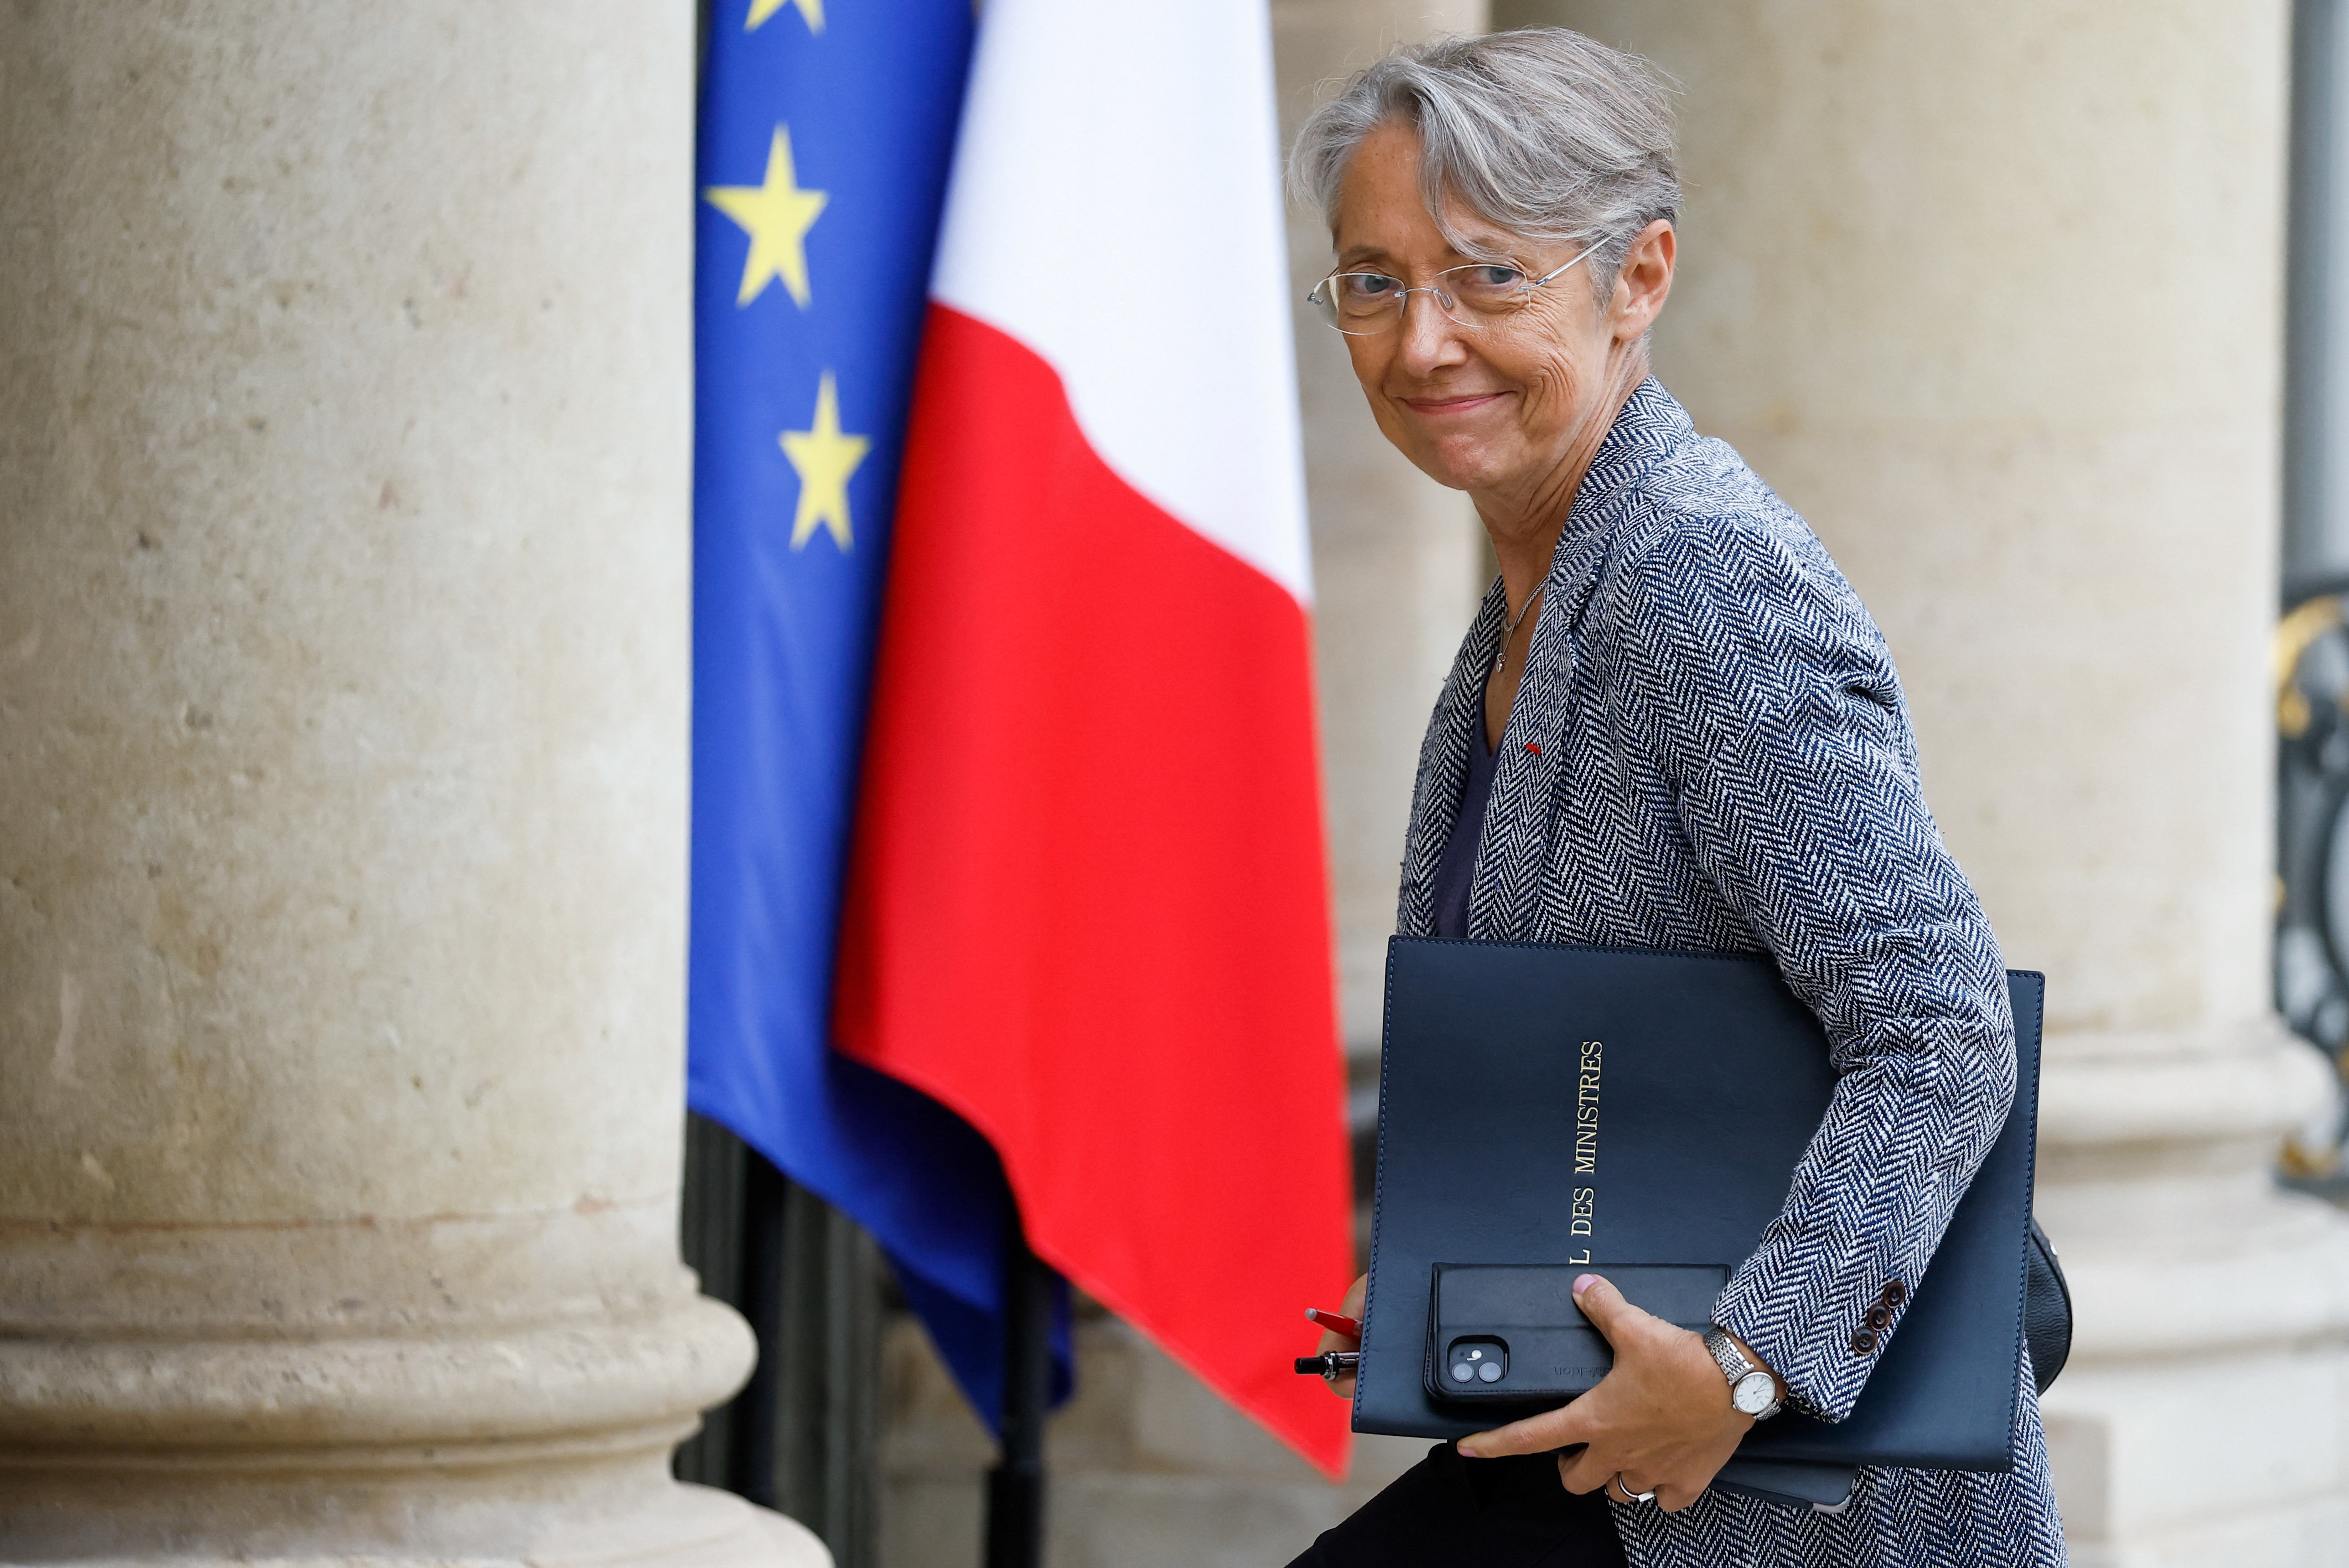 La izquierda francesa presentará una moción de censura en el Parlamento contra la primera ministra Elisabeth Borne